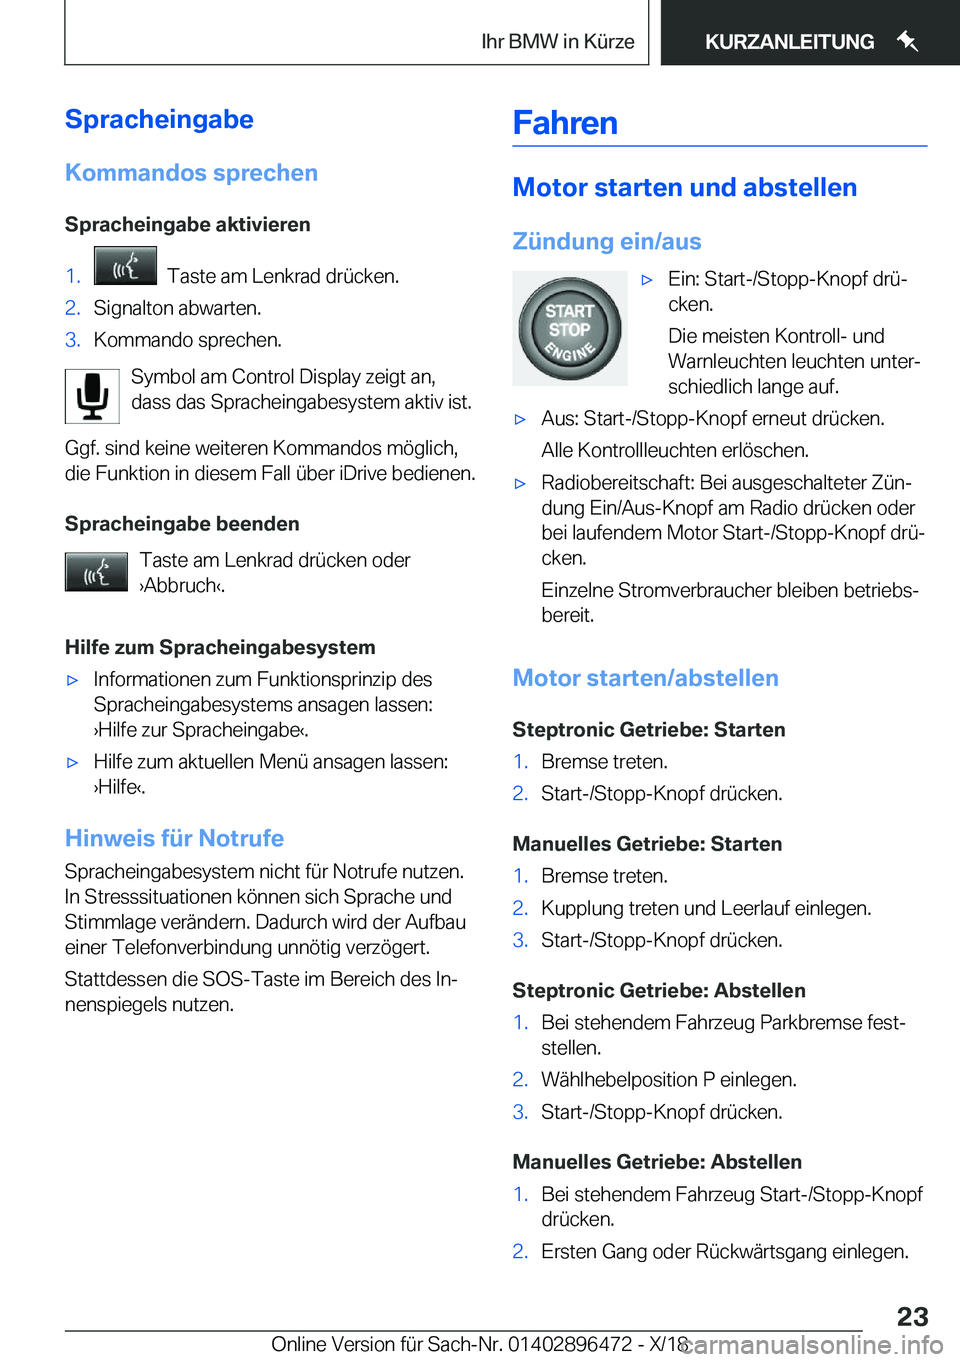 BMW X1 2019  Betriebsanleitungen (in German) �S�p�r�a�c�h�e�i�n�g�a�b�e�K�o�m�m�a�n�d�o�s��s�p�r�e�c�h�e�n
�S�p�r�a�c�h�e�i�n�g�a�b�e��a�k�t�i�v�i�e�r�e�n�1�.���T�a�s�t�e��a�m��L�e�n�k�r�a�d��d�r�